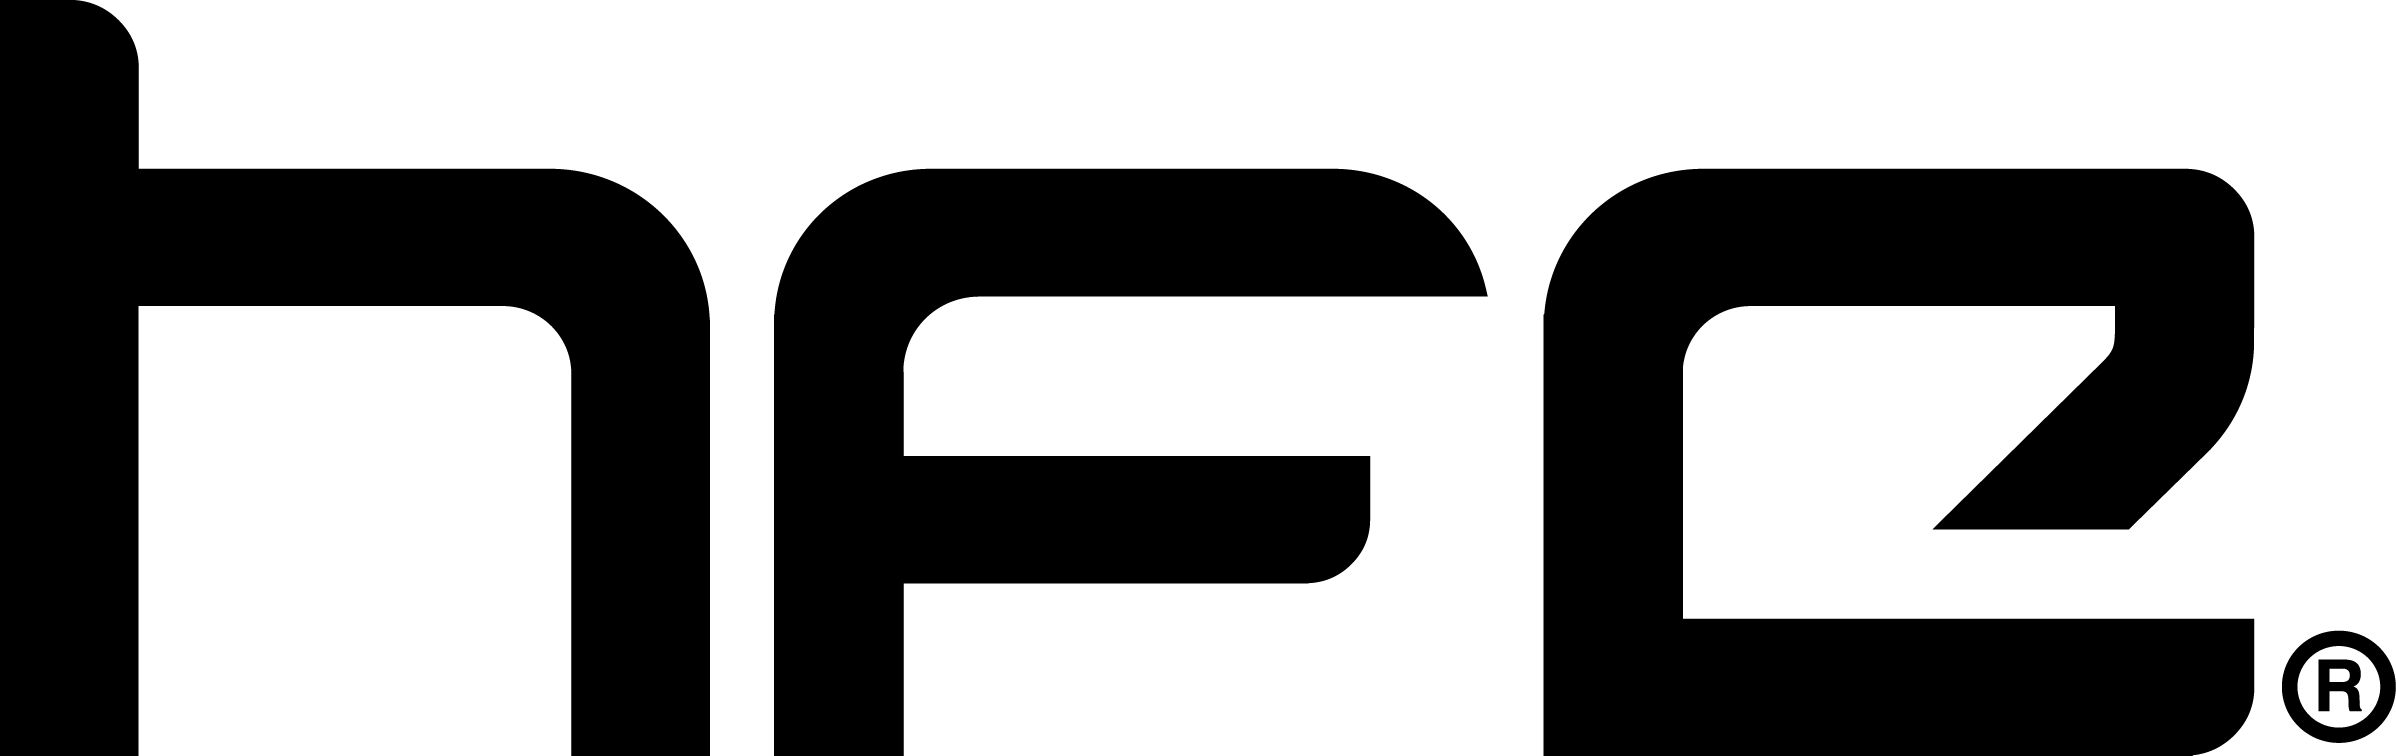 HFE logo